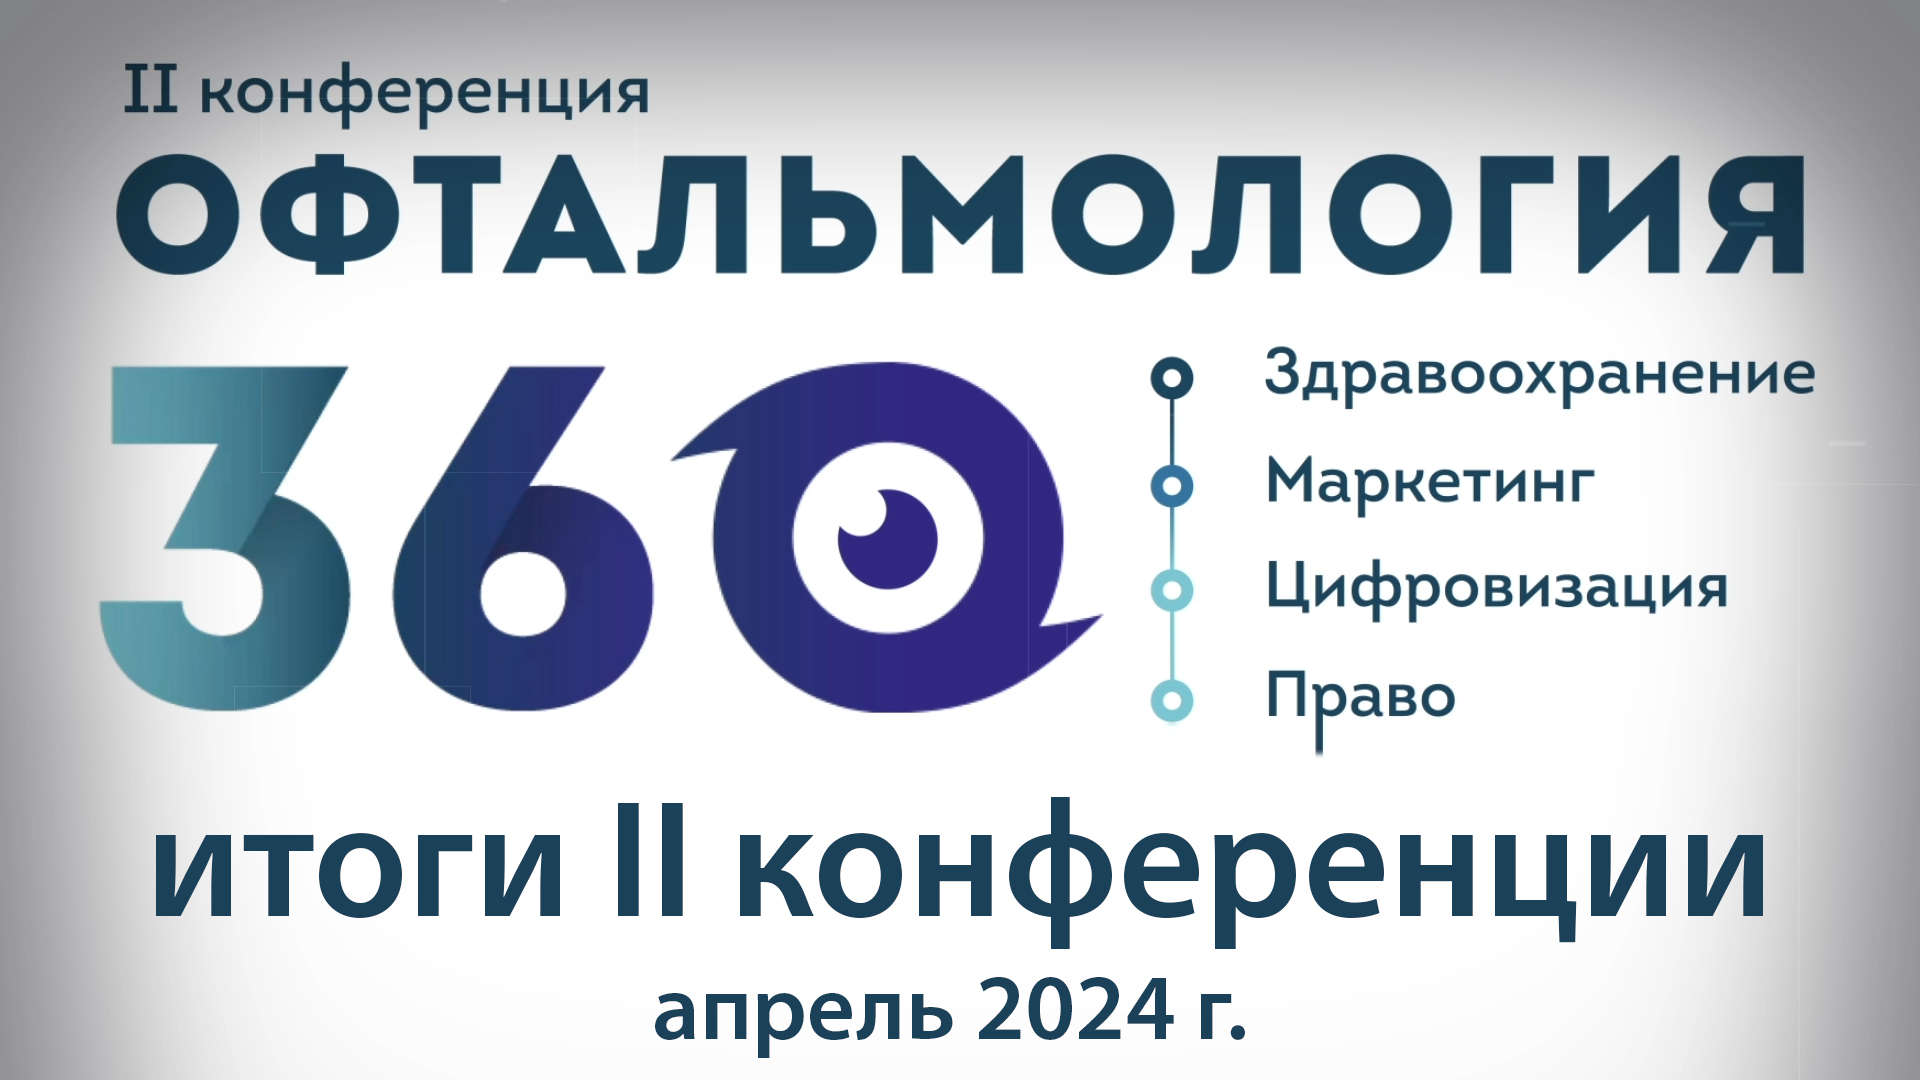 Итоги II конференции Офтальмология 360, 2024 год